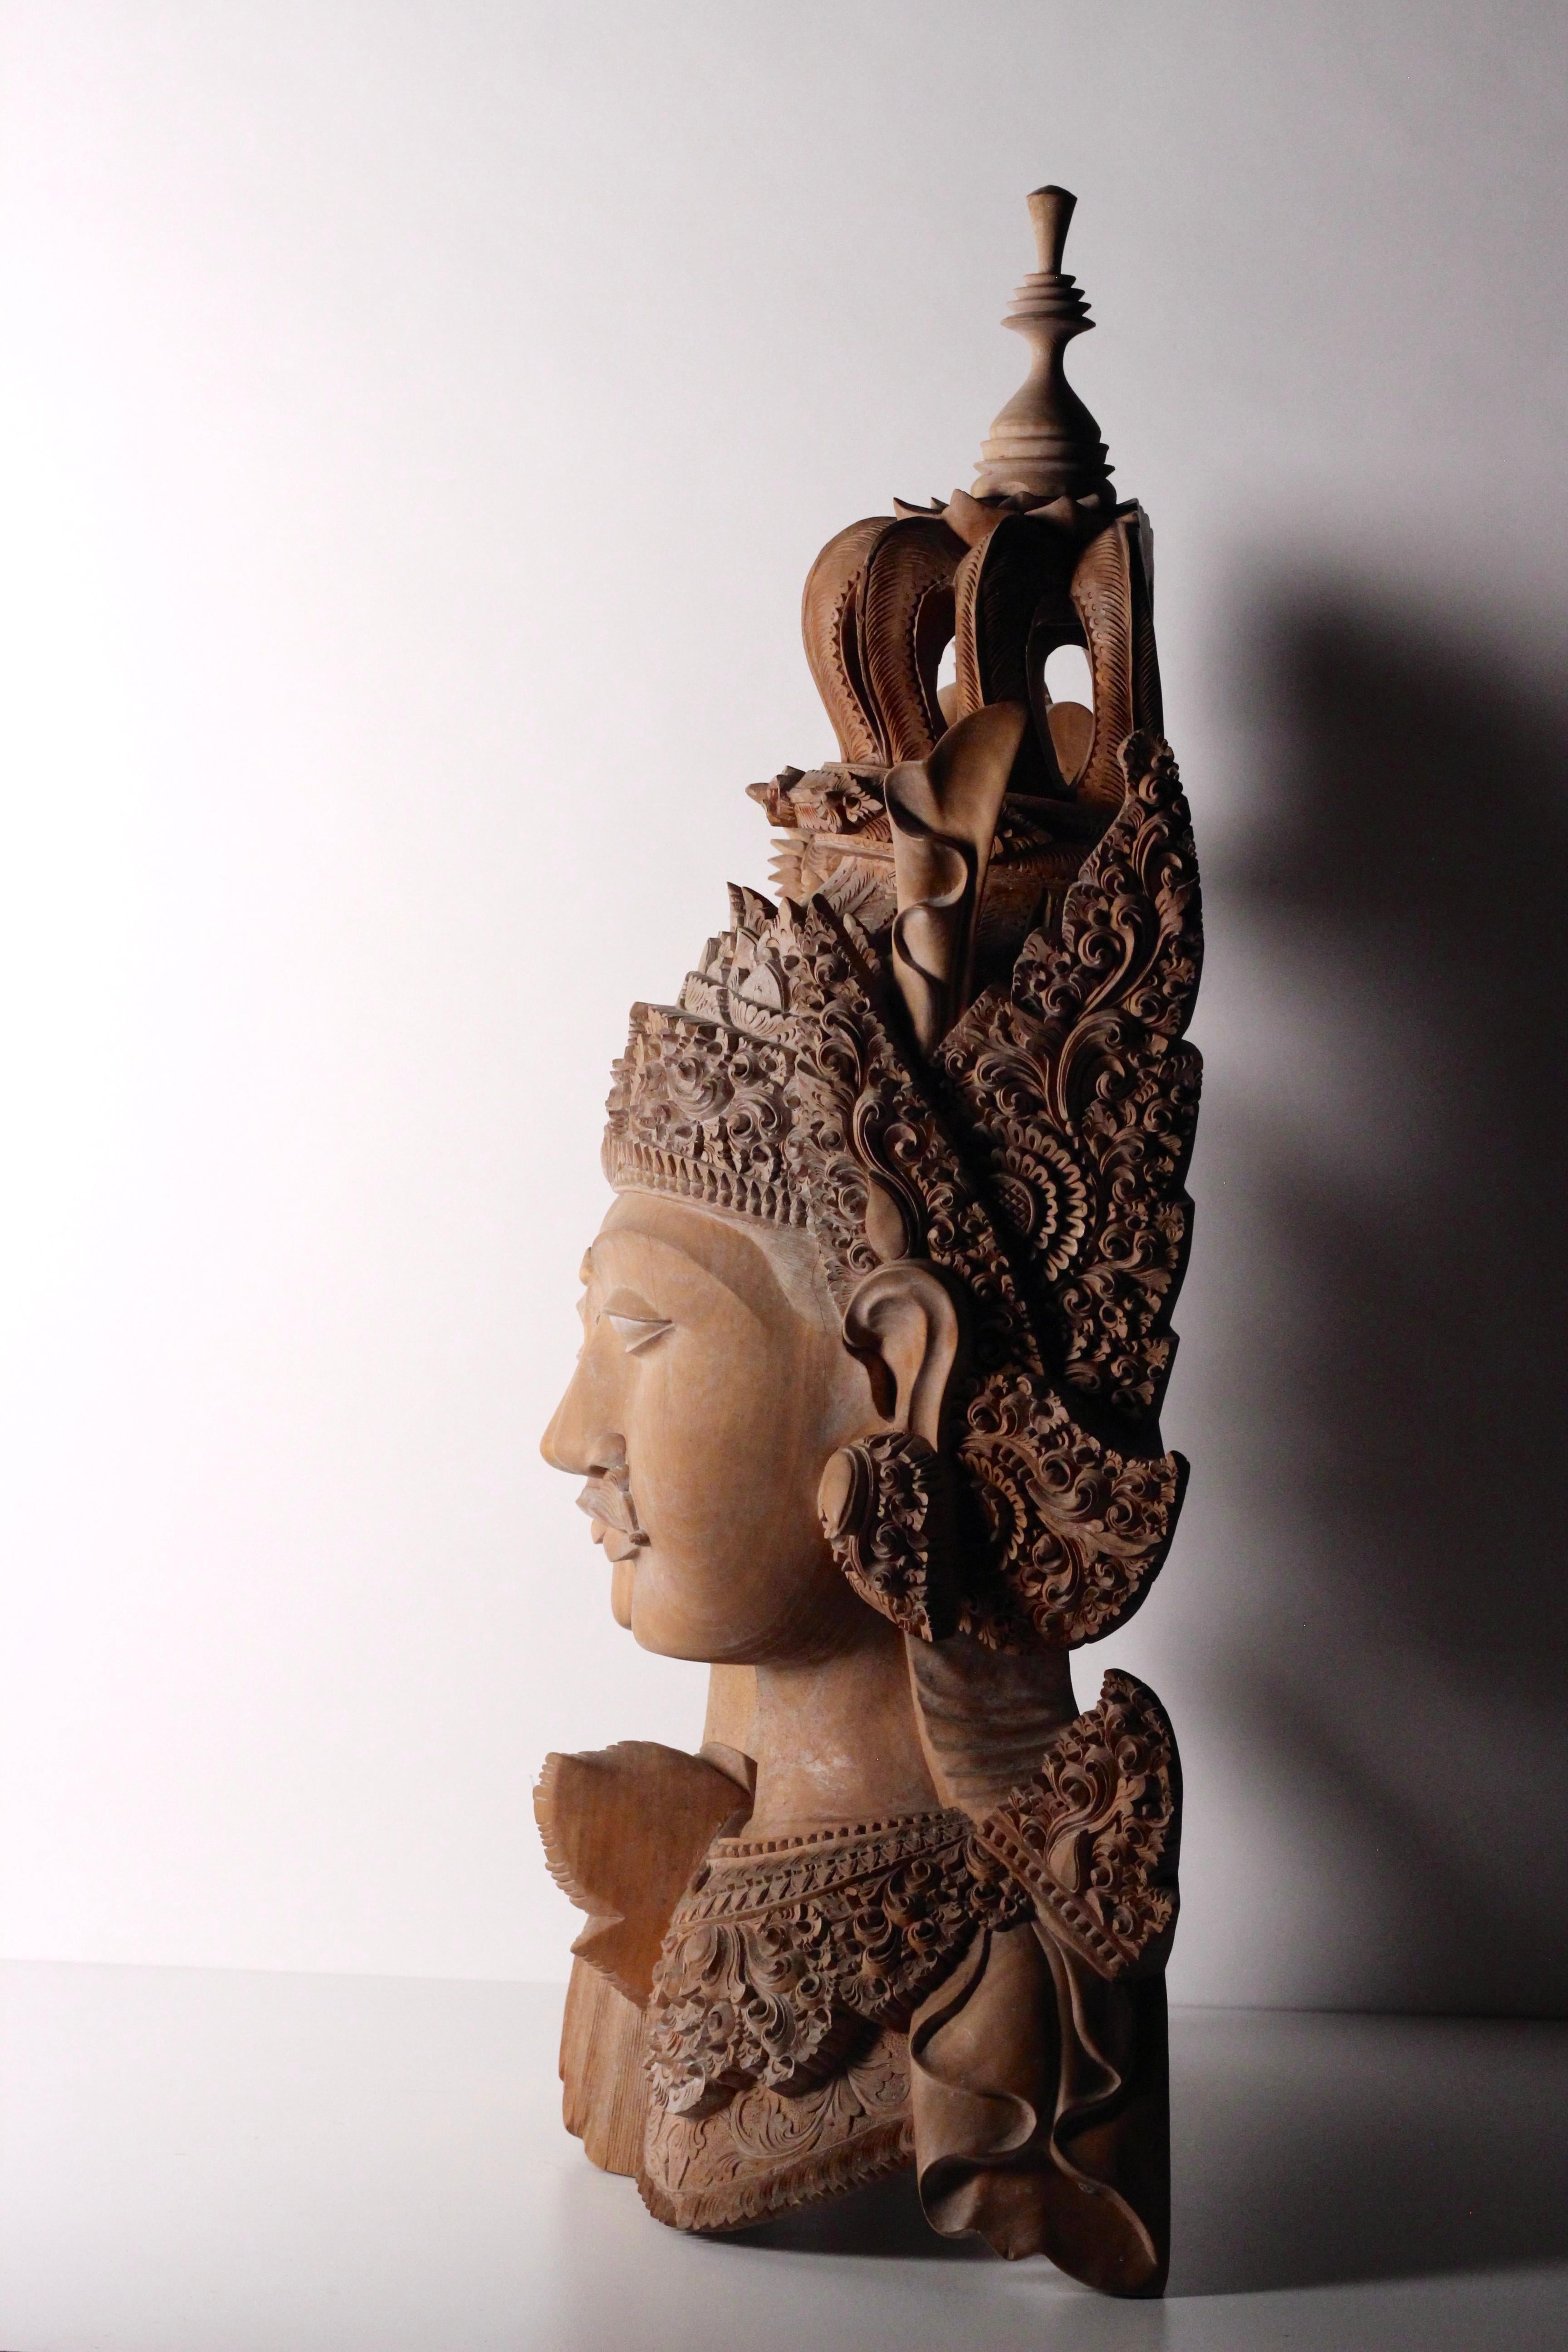 Une sculpture magnifique, éthérée, compétente et hautement qualifiée de la région d'Ubud à Bali. De nombreux villages de la région sont spécialisés dans divers métiers et nous avons trouvé cette magnifique pièce en explorant les profondeurs de la